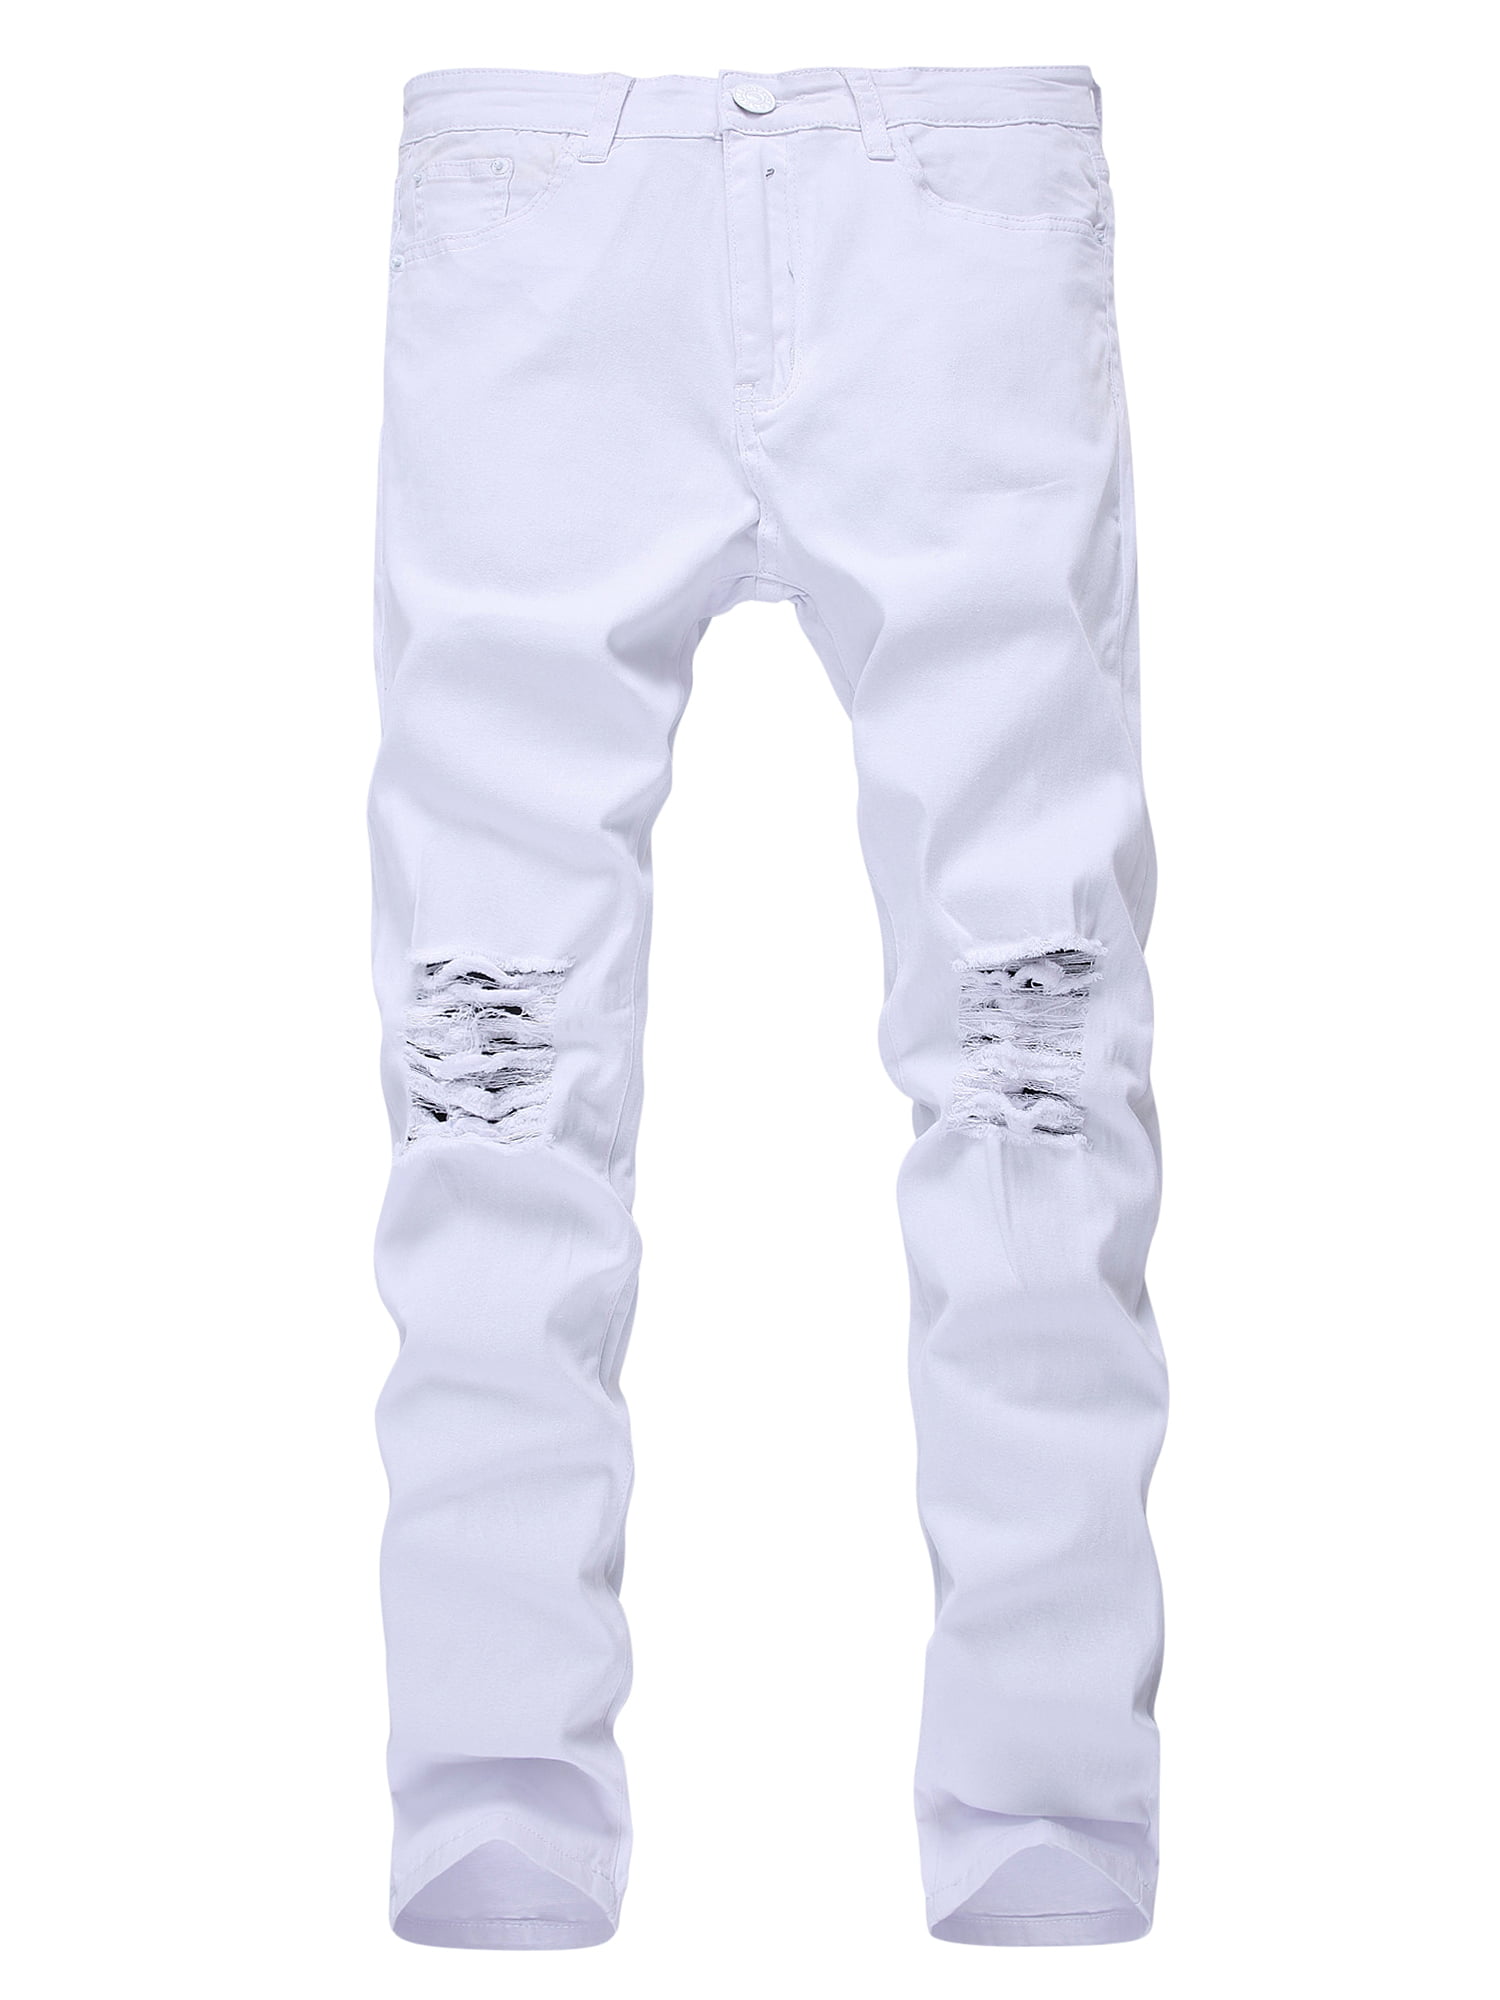 Exzenter Interpunktion Anwenden mens white jeans regular fit exotisch ...